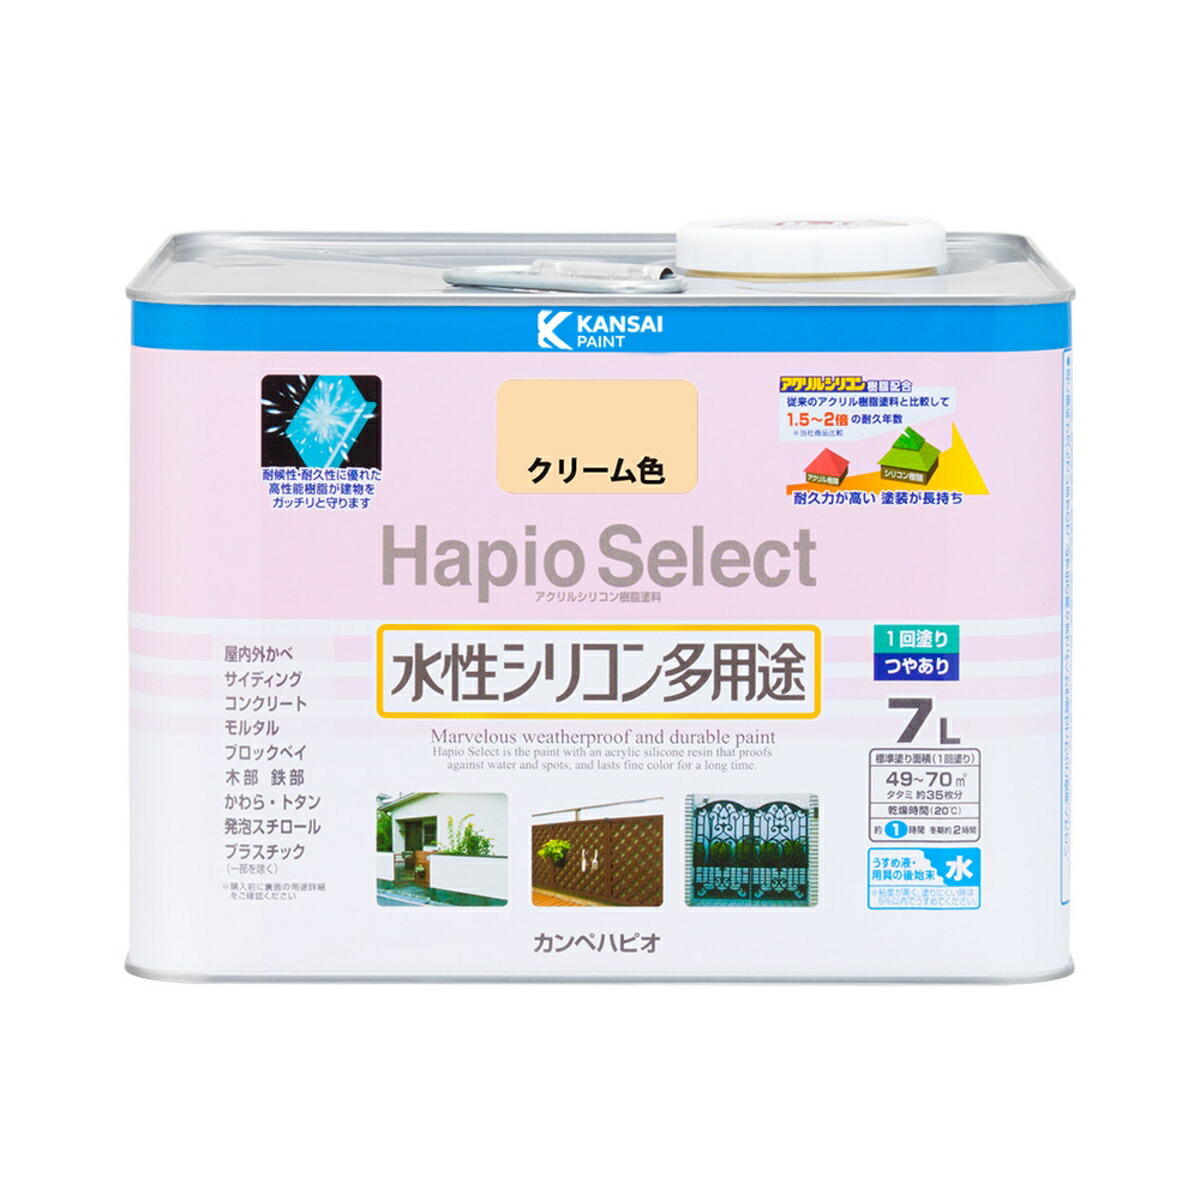 Hapio Select ハピオセレクト クリーム色 7L カンペハピオ つやあり